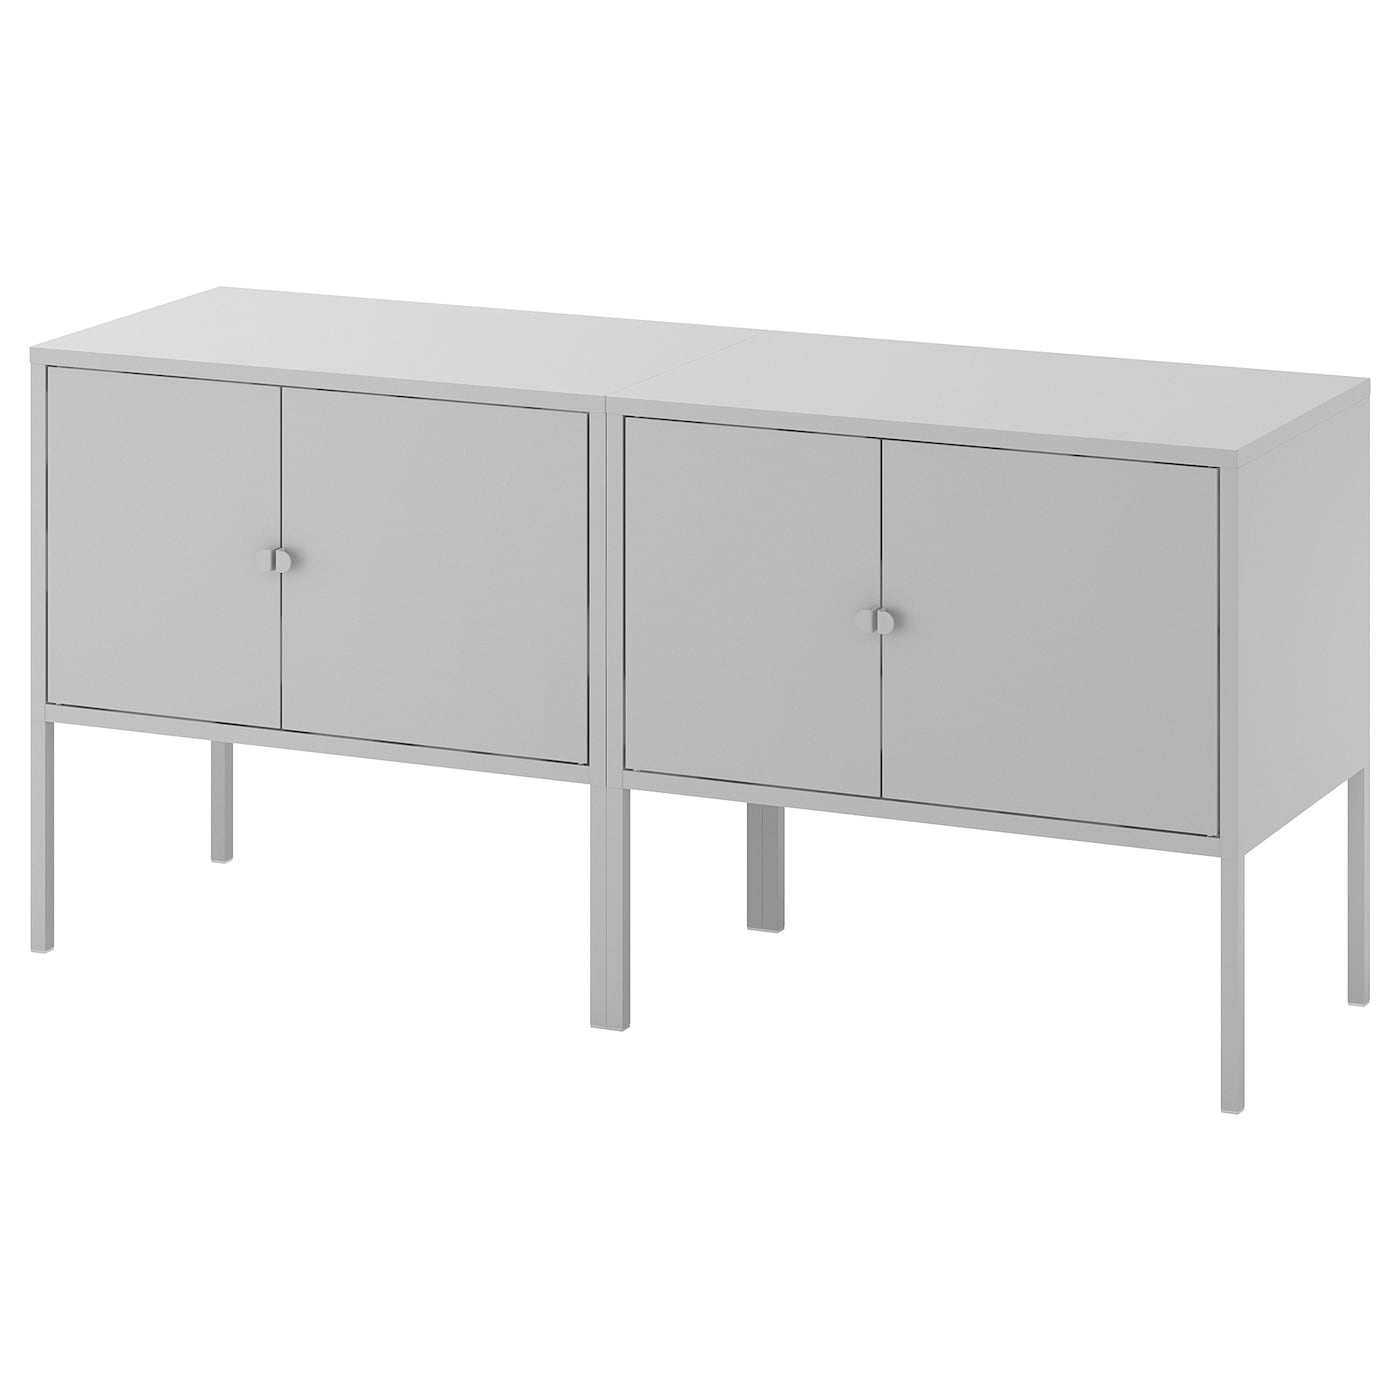 Шкаф - LIXHULT IKEA/ ЛИКСГУЛЬТ ИКЕА,  120х57 см, серый